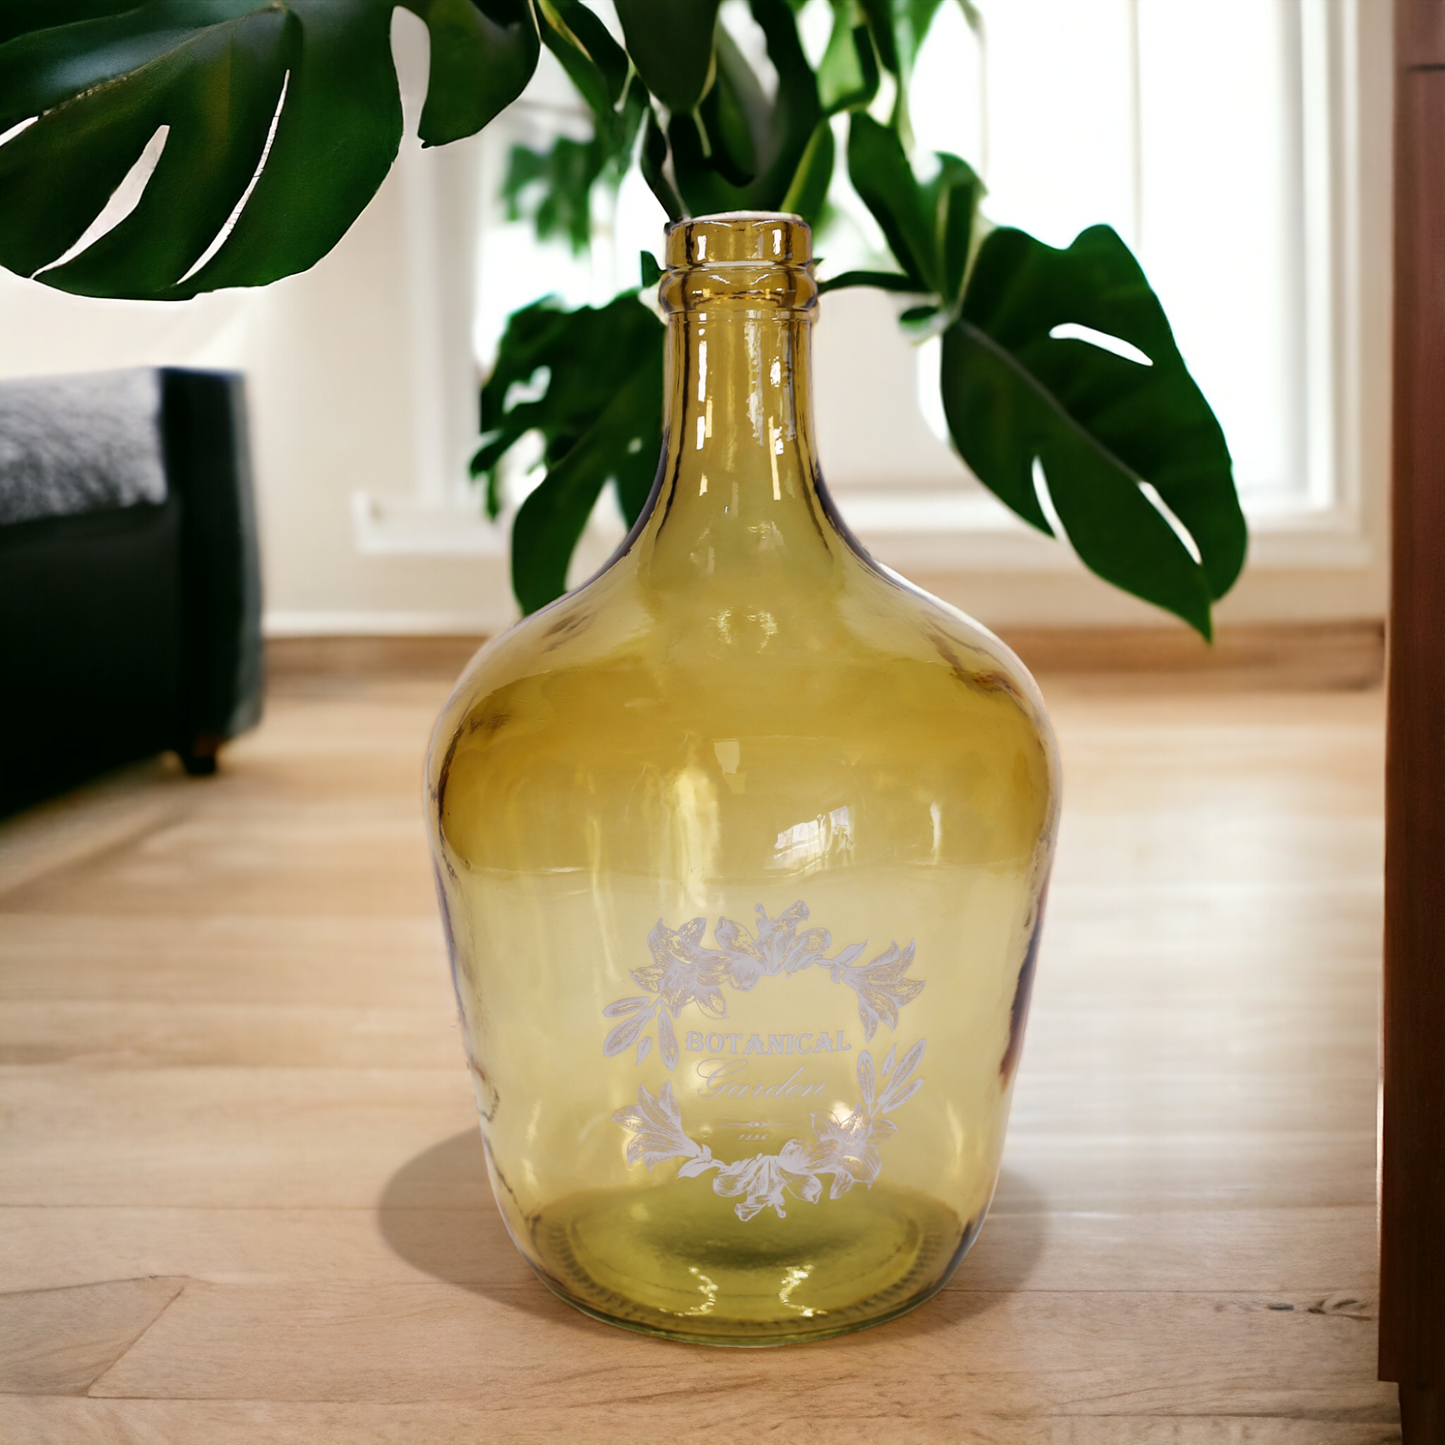 Bodenvase - Flaschenkaraffe "Botanical" hellbraun-rustikal mit Aufdruck - 30 cm